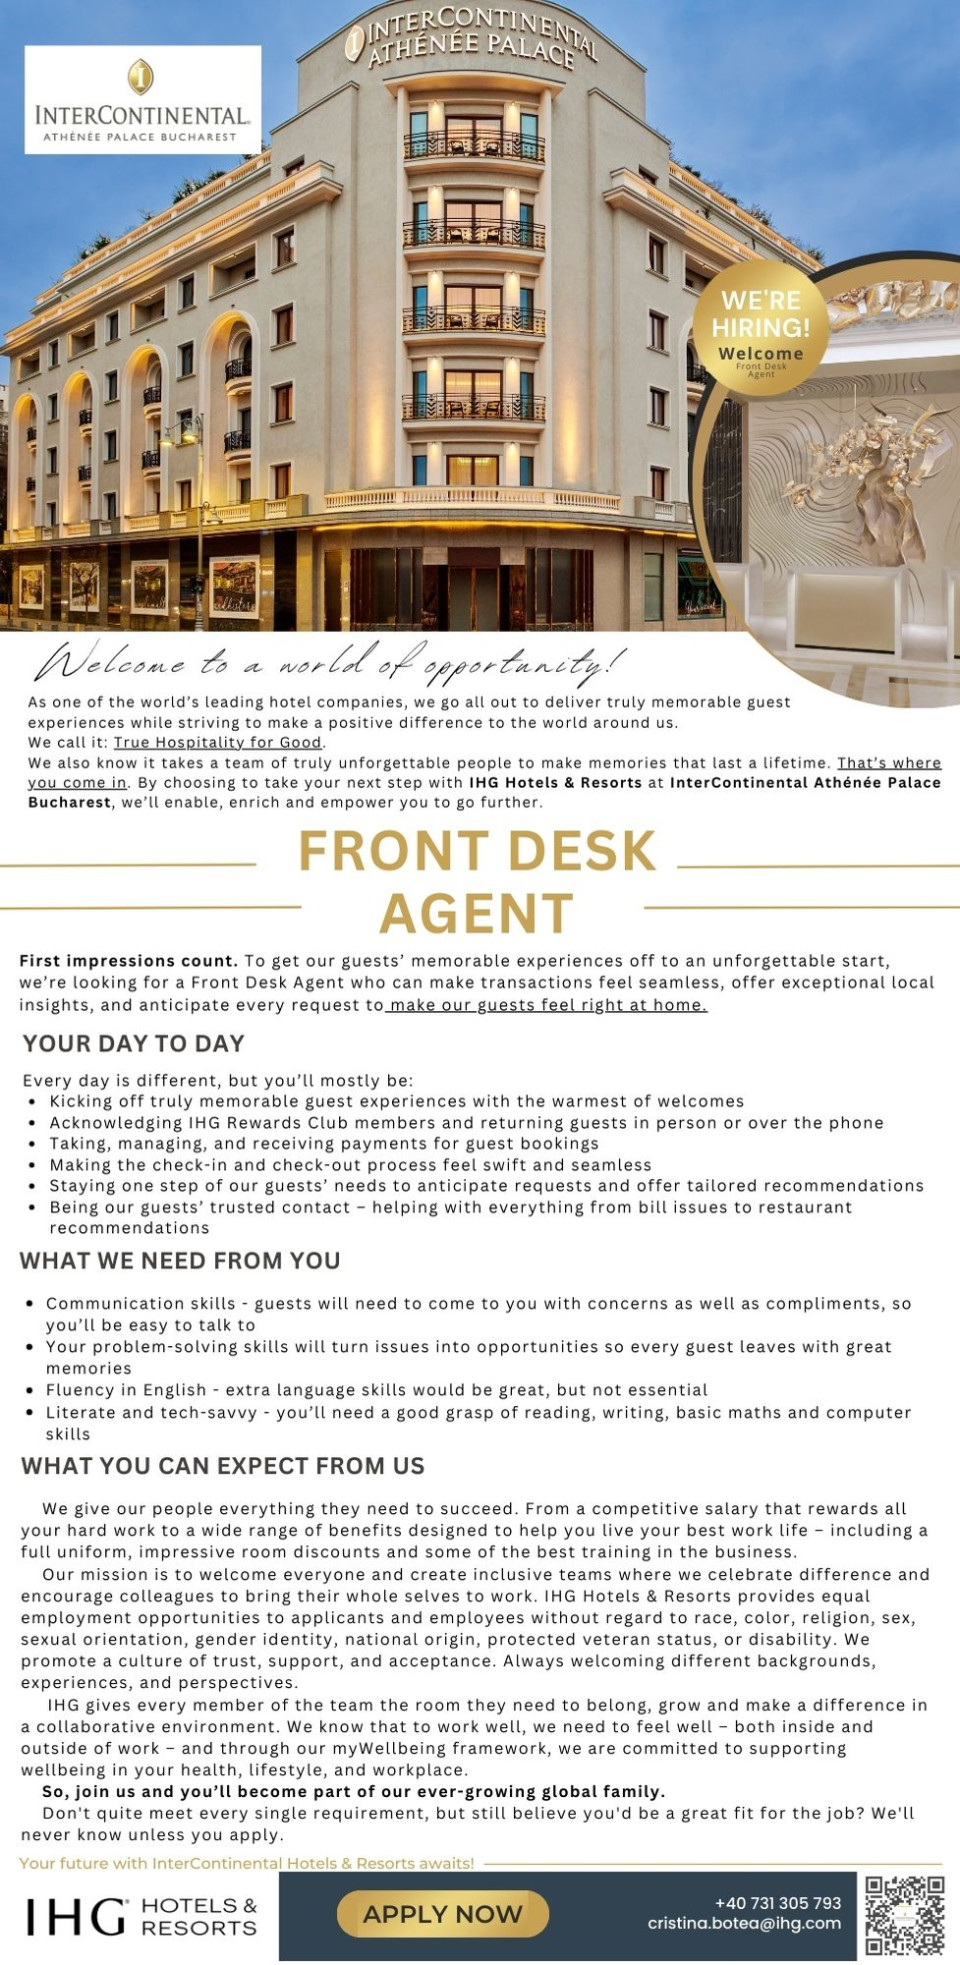 Front Desk Agent